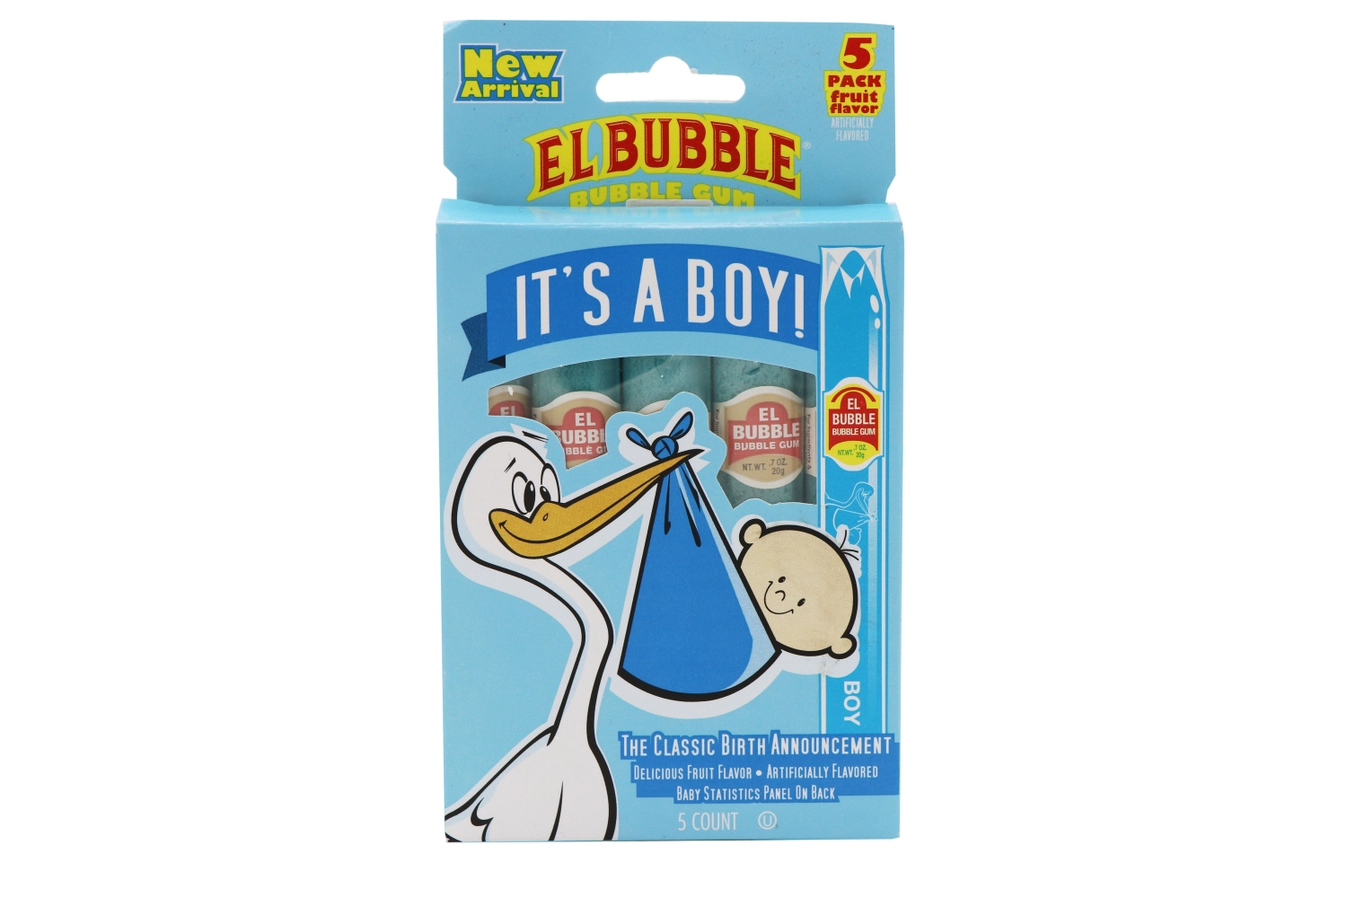 It's A Boy - El Bubble Bubble Gum Cigars - Pack of 5 - Mellow Monkey